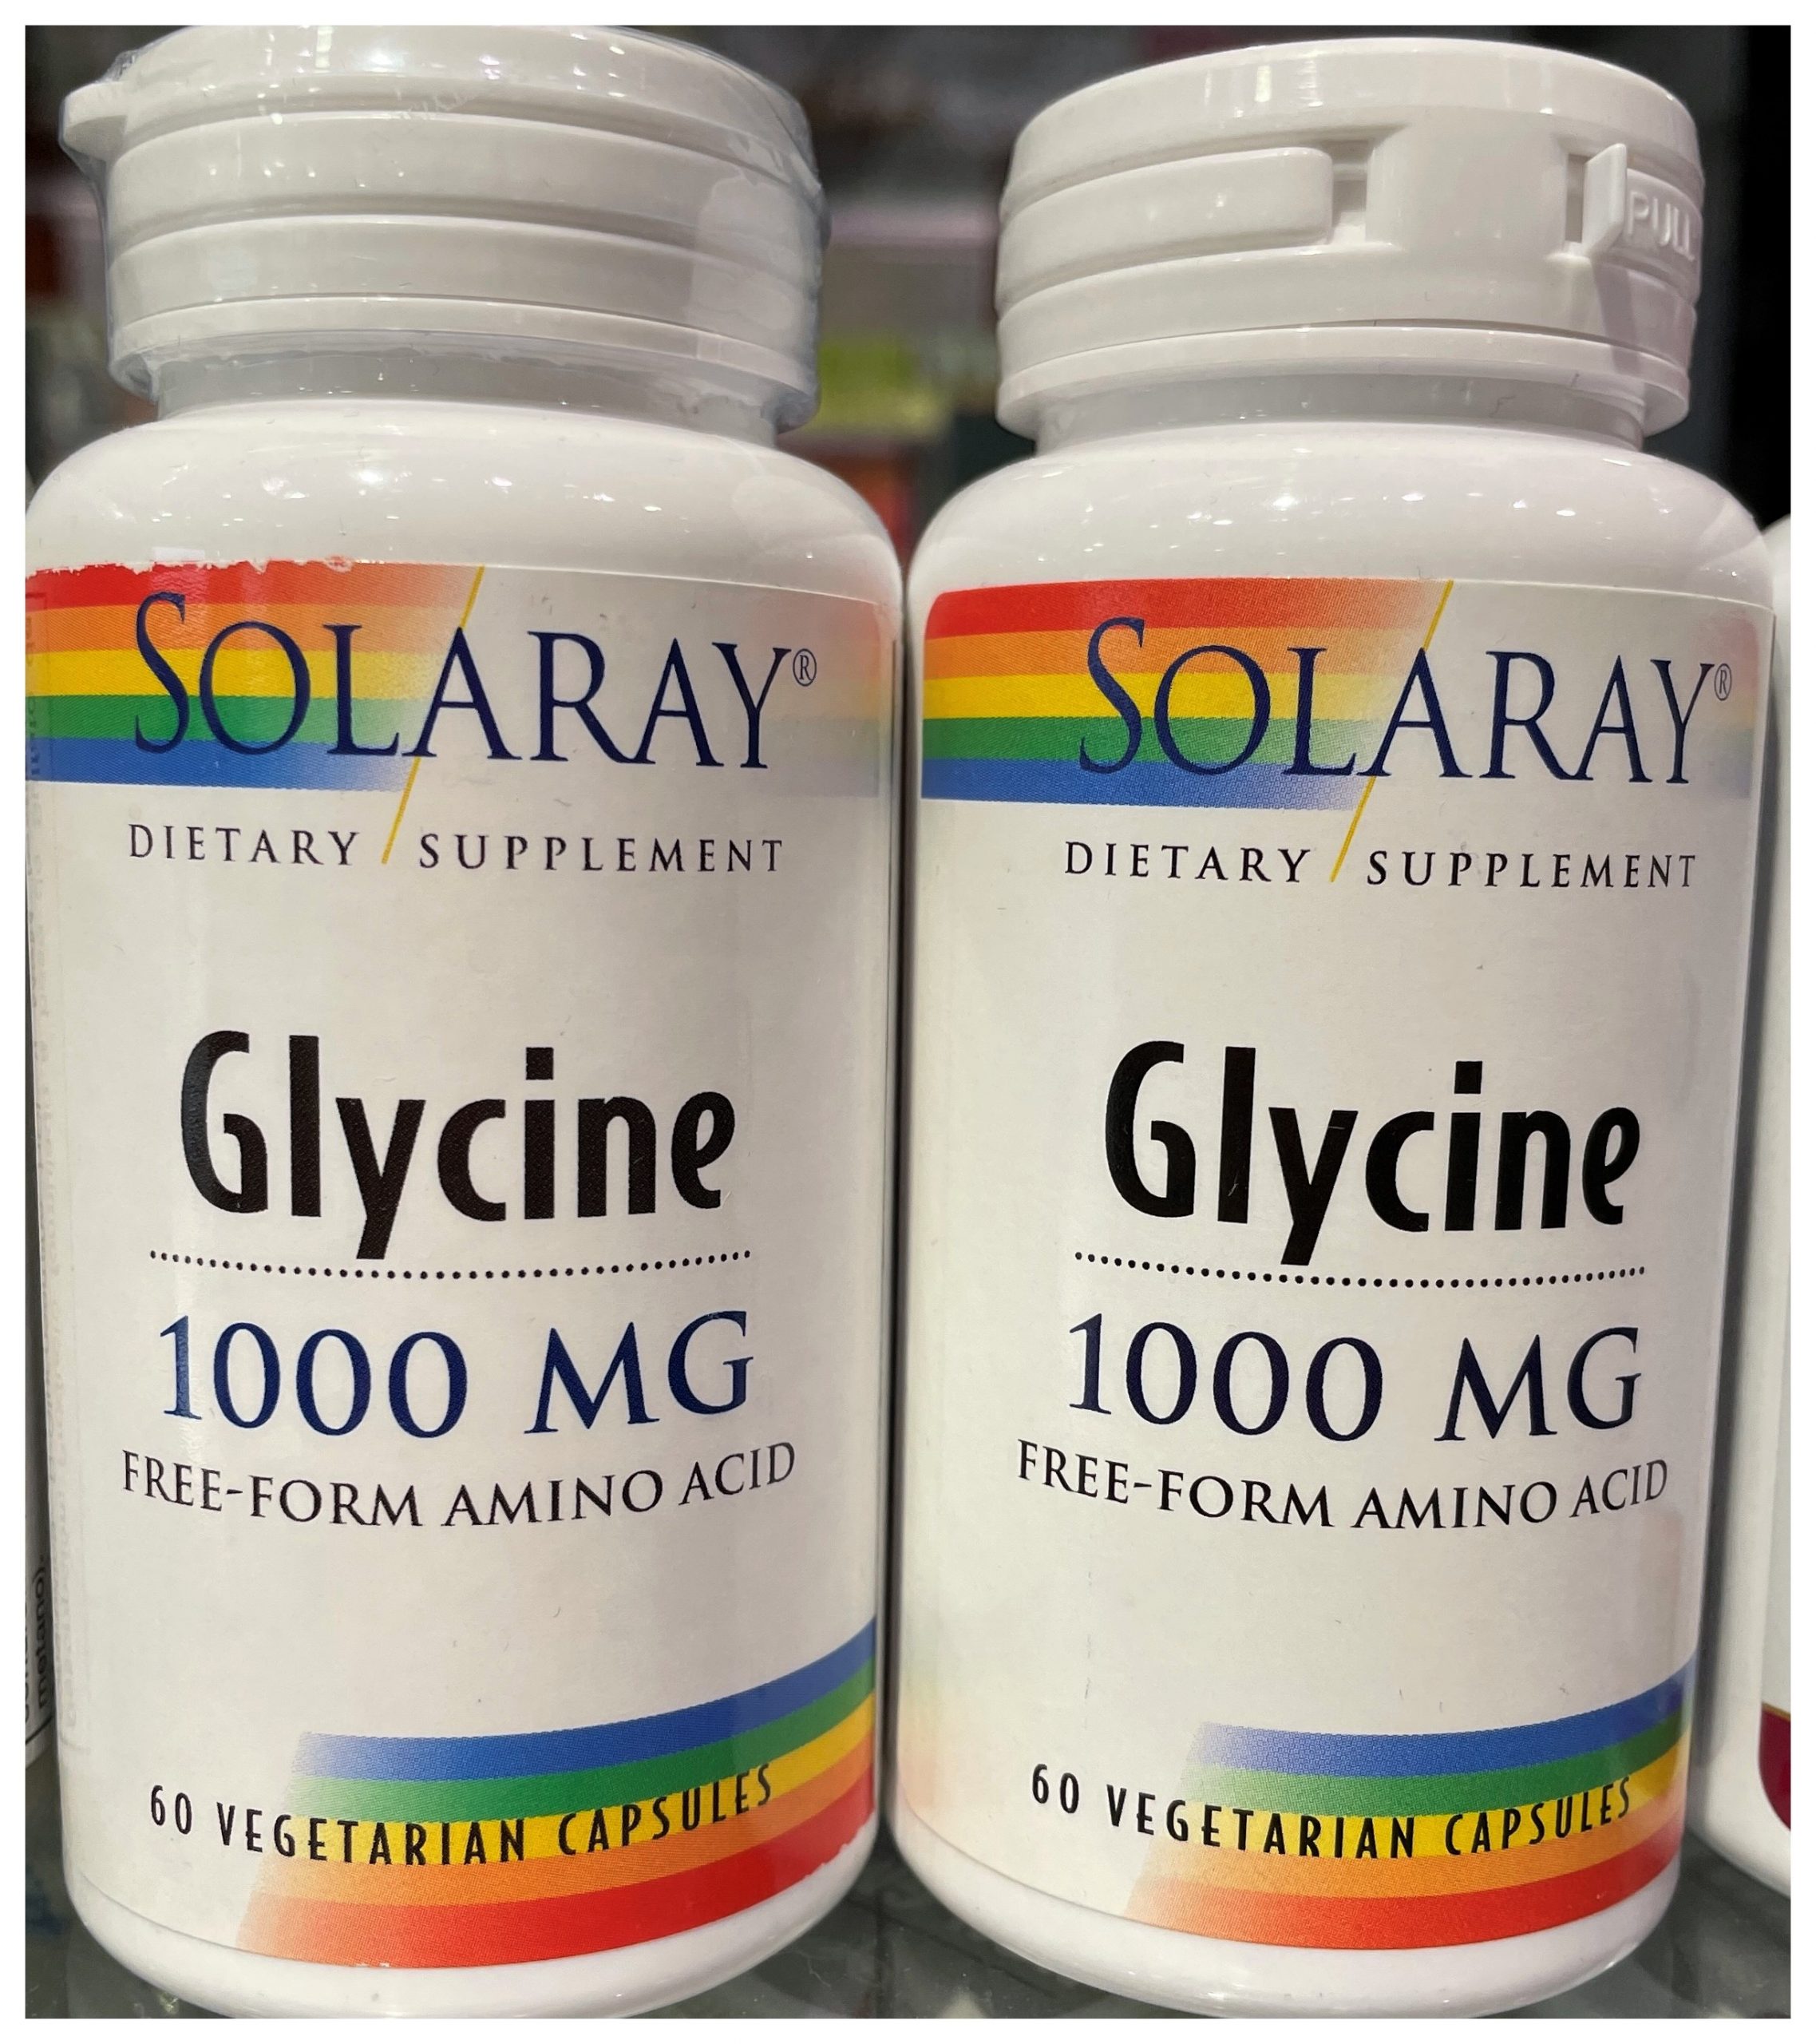 Comprar Glycine de Solaray en Gran Farmacia Andorra Online es un complemento alimenticio de aminoácido esencial que el cuerpo utiliza para la formación de proteínas